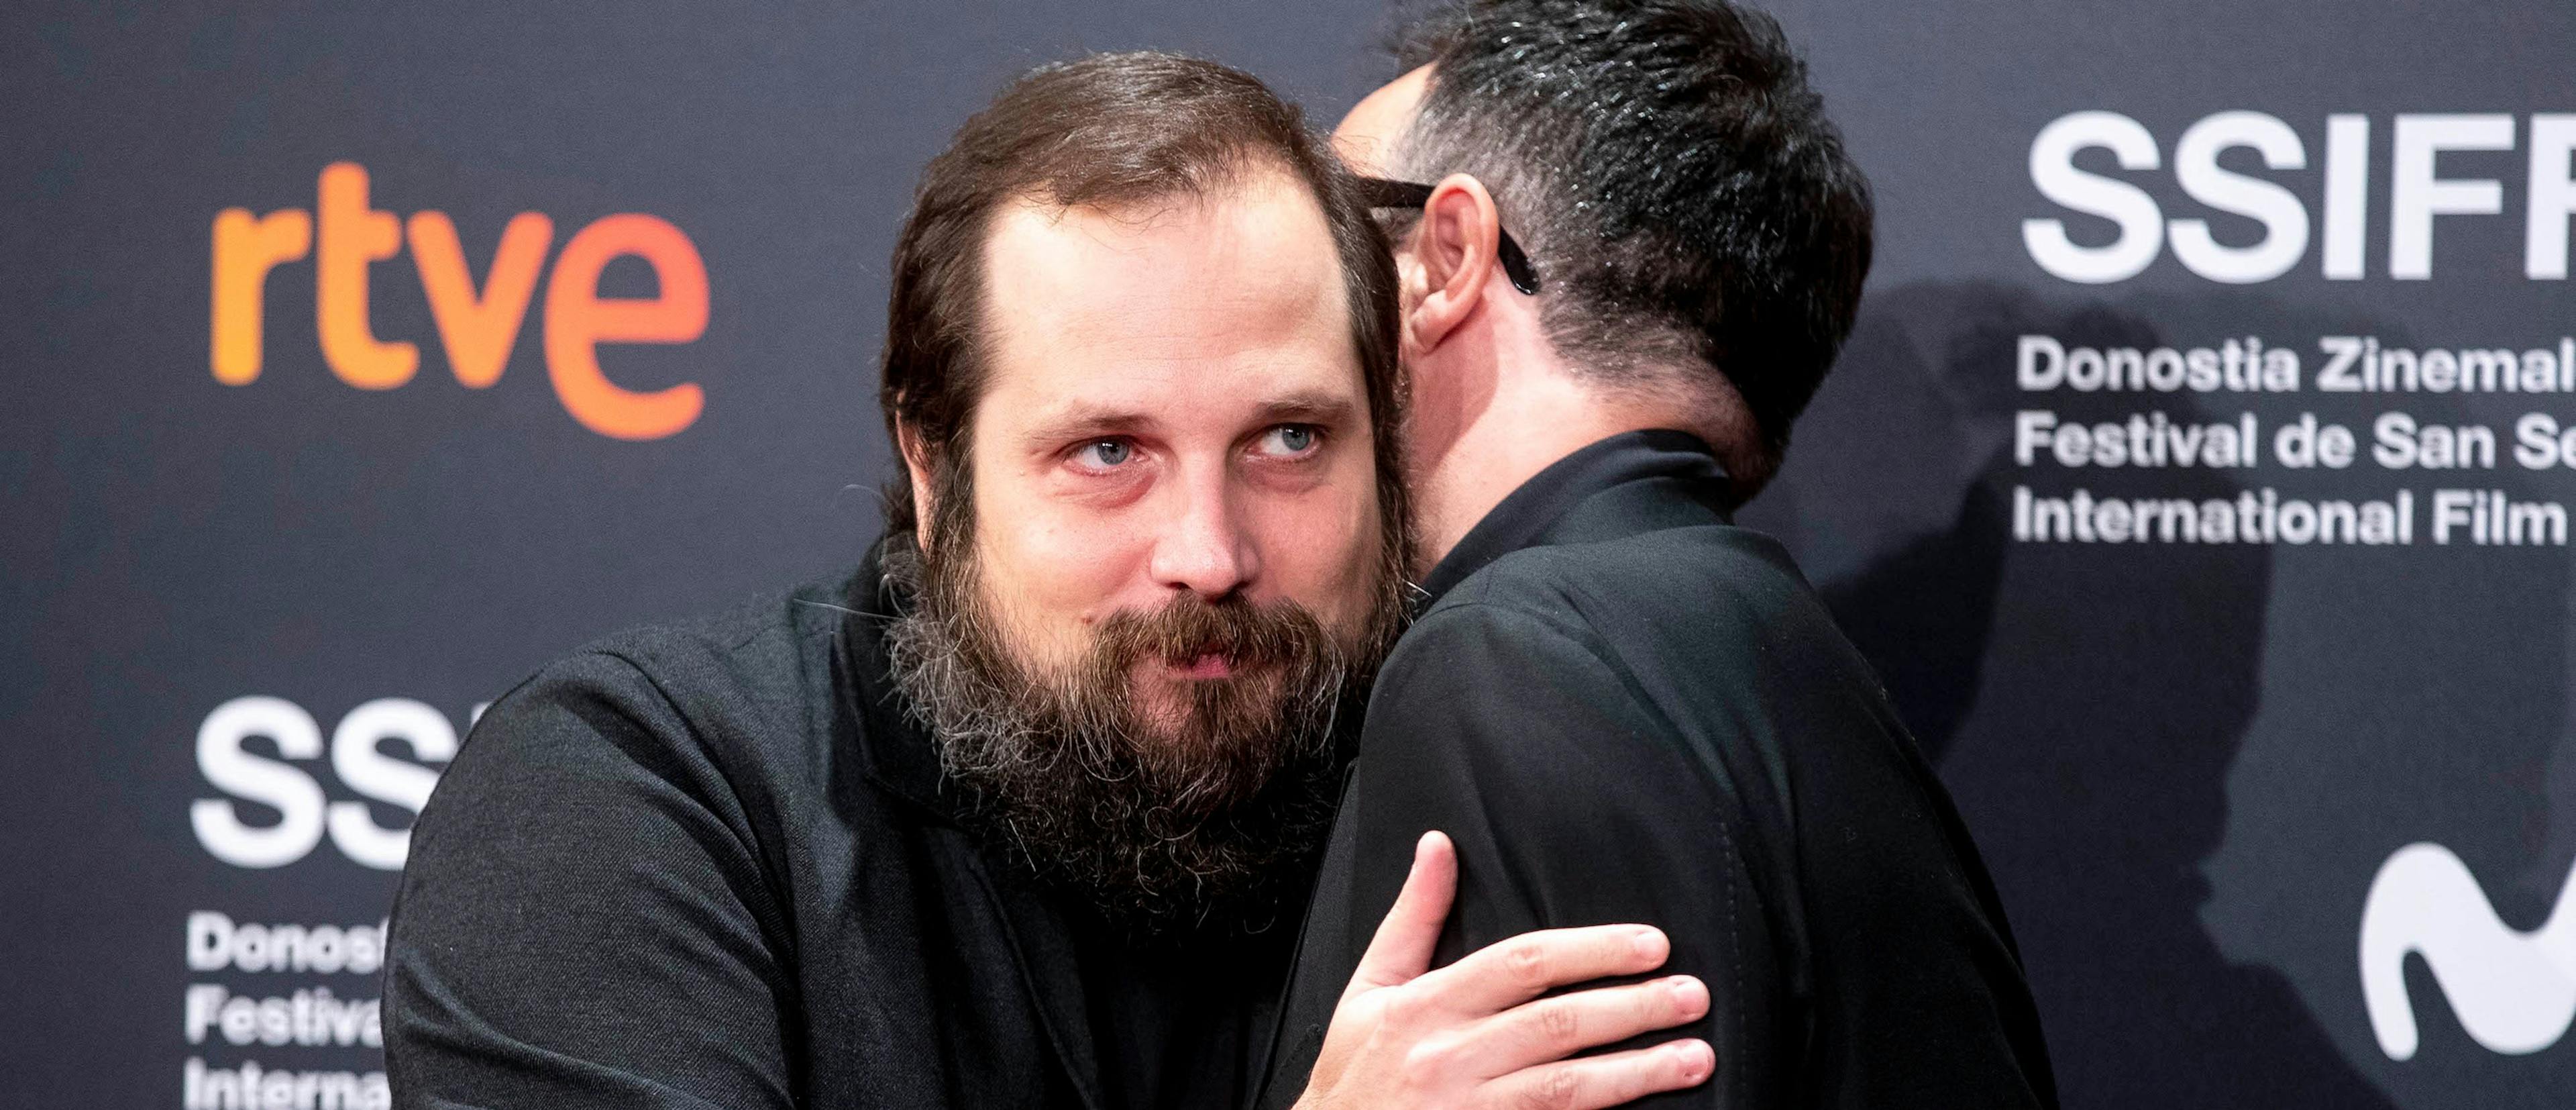 El director de cine Carlos Vermut abraza a su compañero Paco Plaza en el Festival de San Sebastián del año 2021